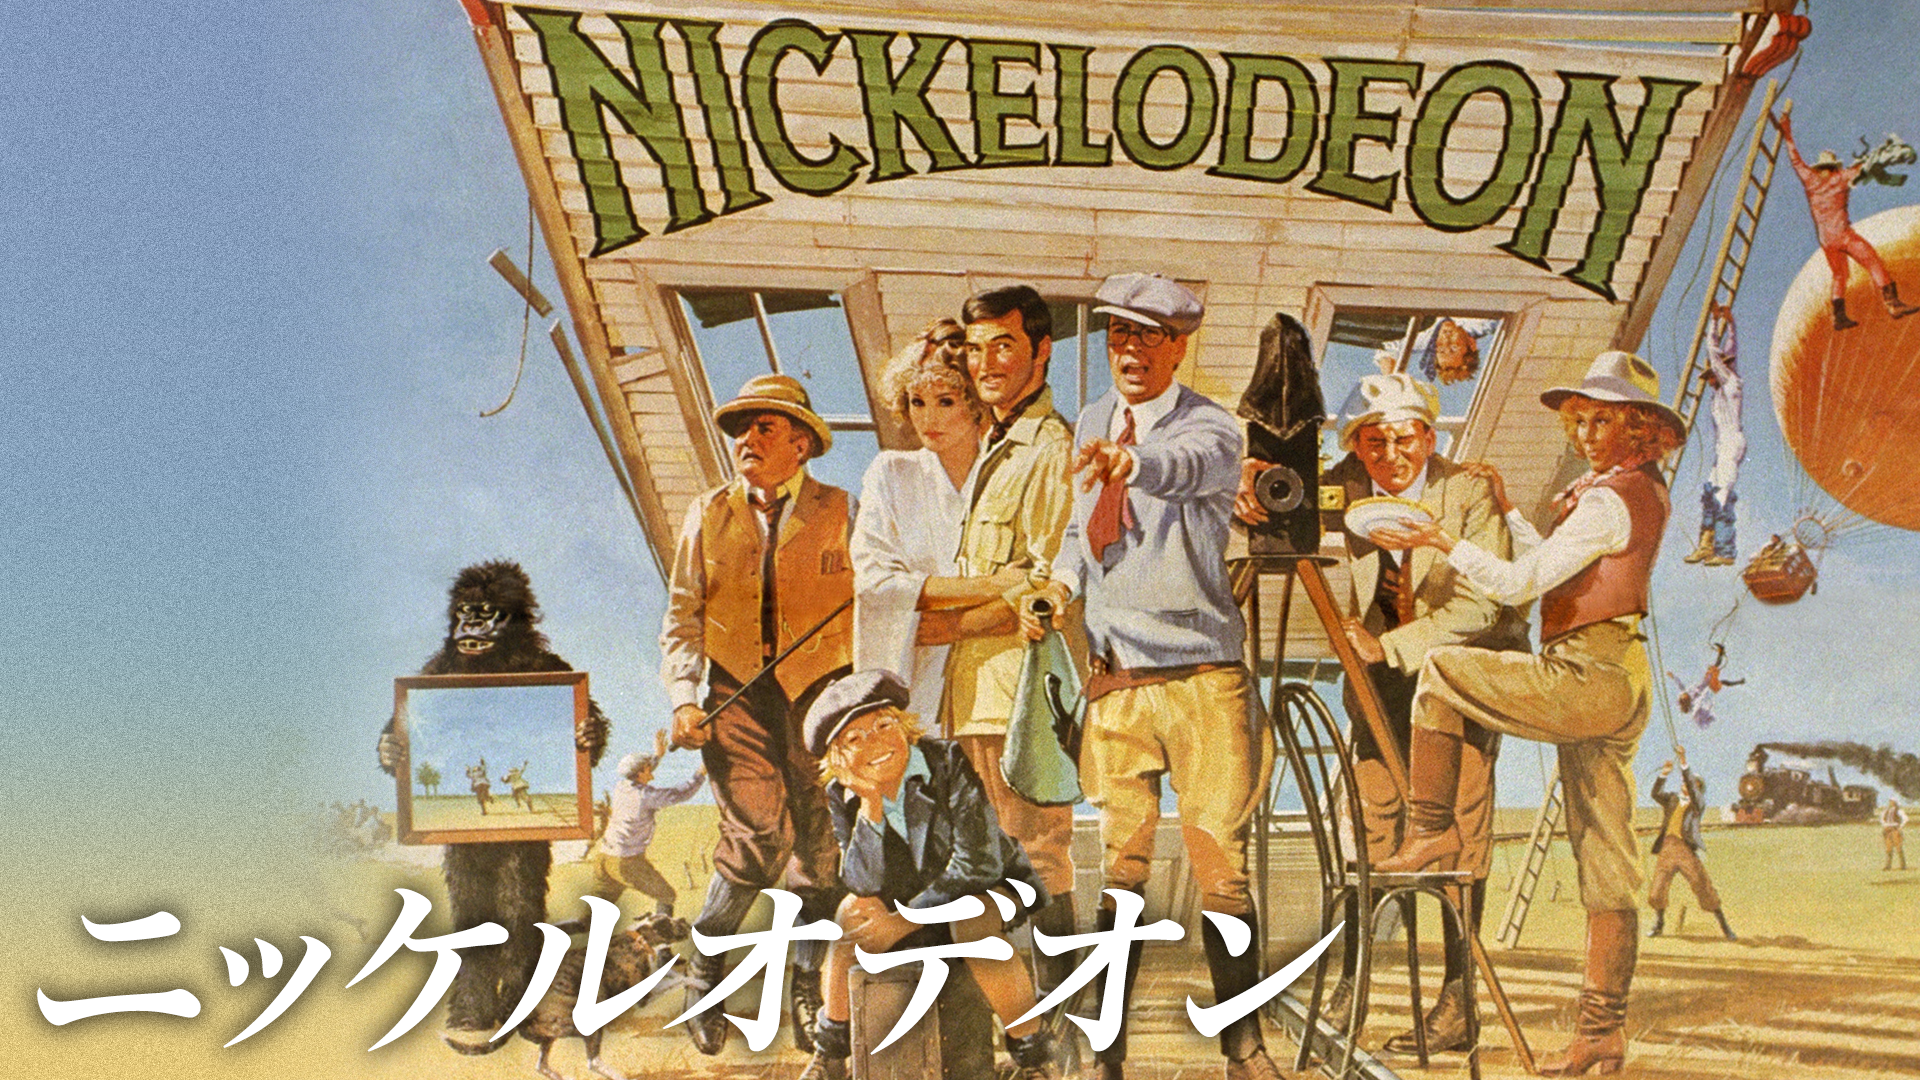 ニッケルオデオン(洋画 / 1976) - 動画配信 | U-NEXT 31日間無料トライアル